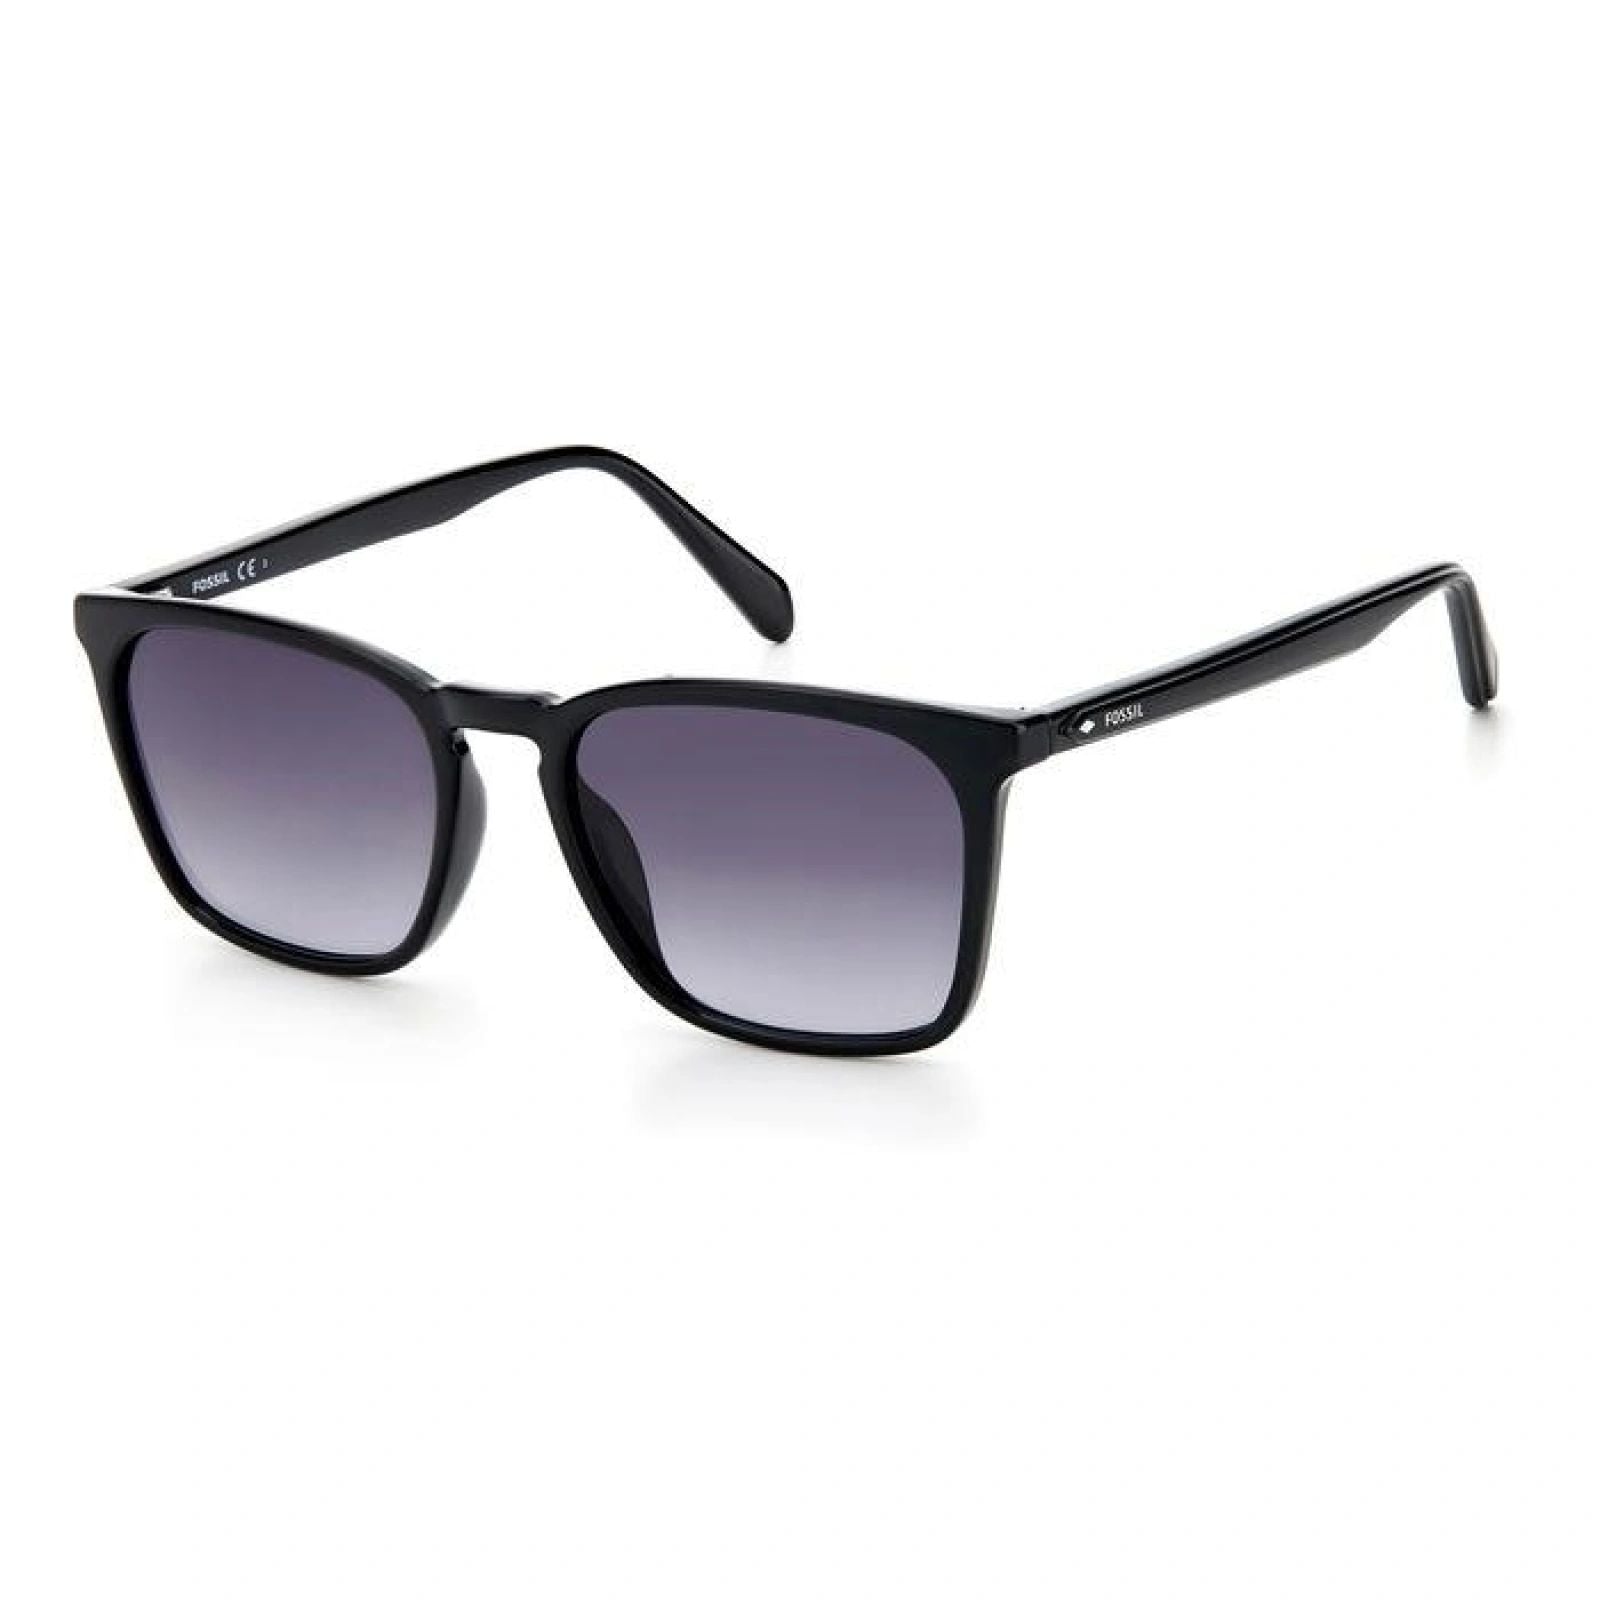 Fossil Men's 55mm Black Sunglasses In Purple